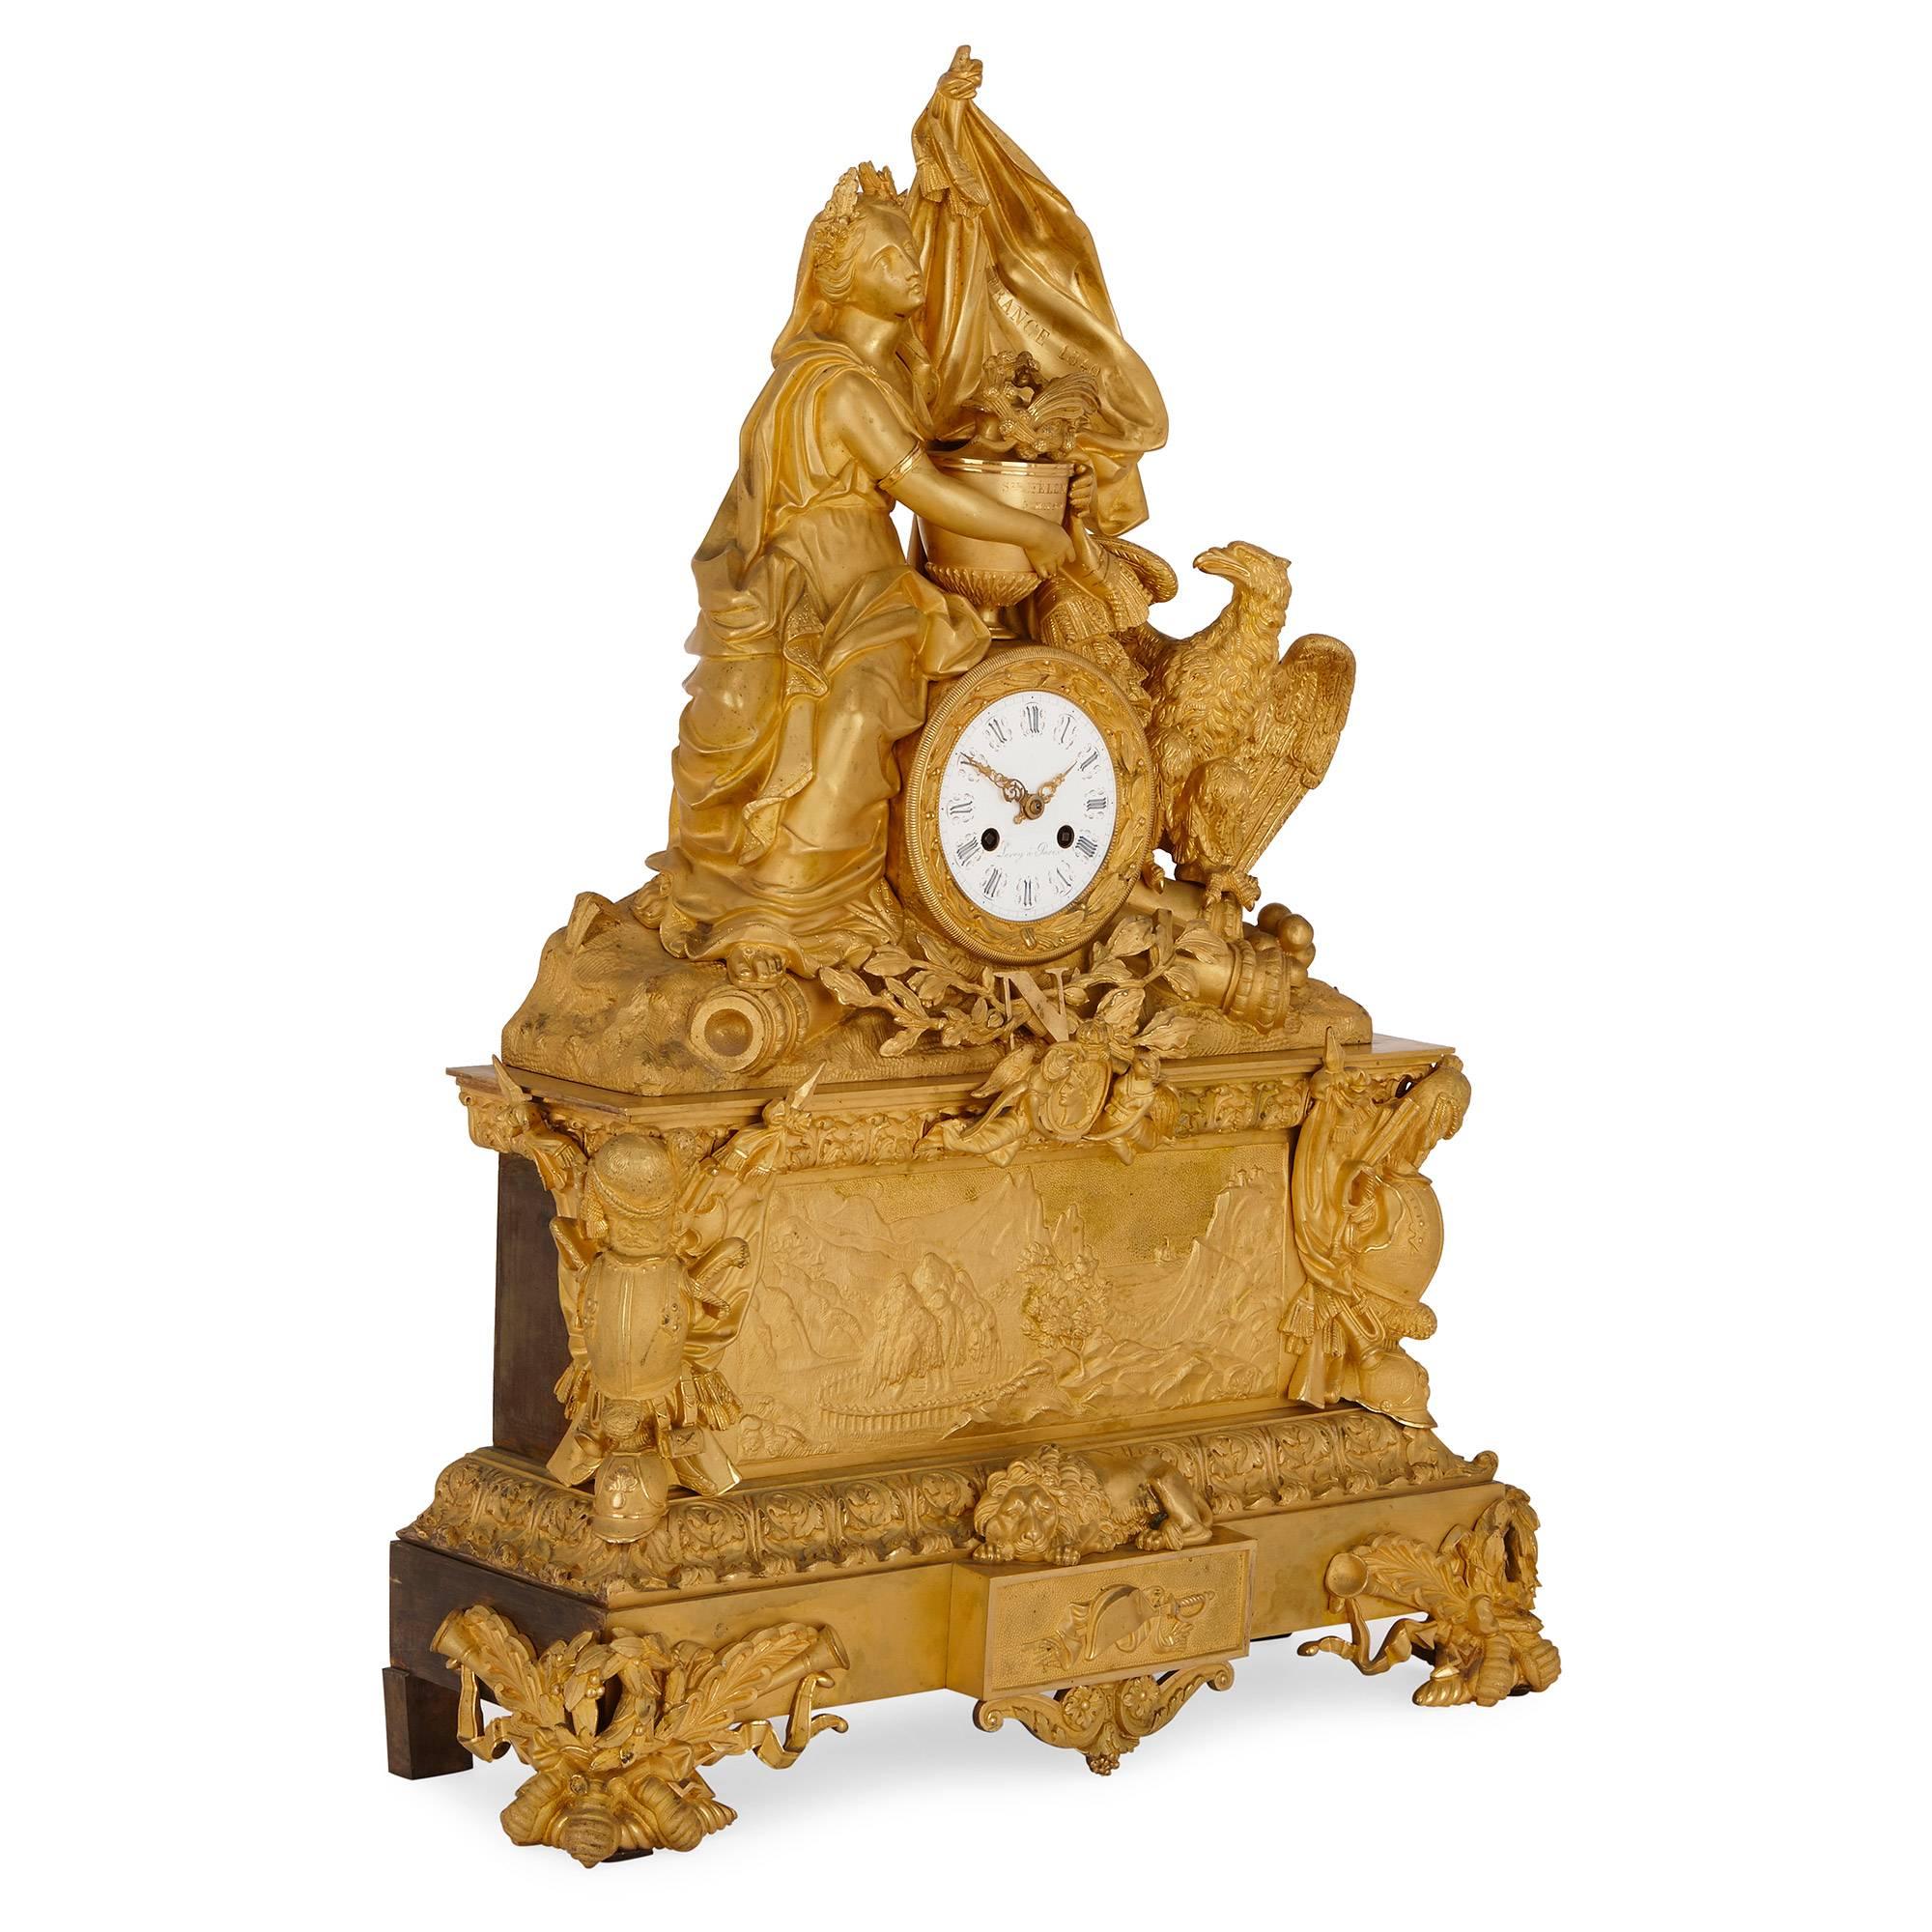 Diese schöne Kaminsimsuhr wurde von dem berühmten Pariser Uhrmacher LeRoy vollständig in Ormolu gegossen und erinnert an die Rückkehr der Asche Napoleons nach Frankreich im Jahr 1840. Die Uhr steht auf einem rechteckigen, gestuften Sockel mit vier